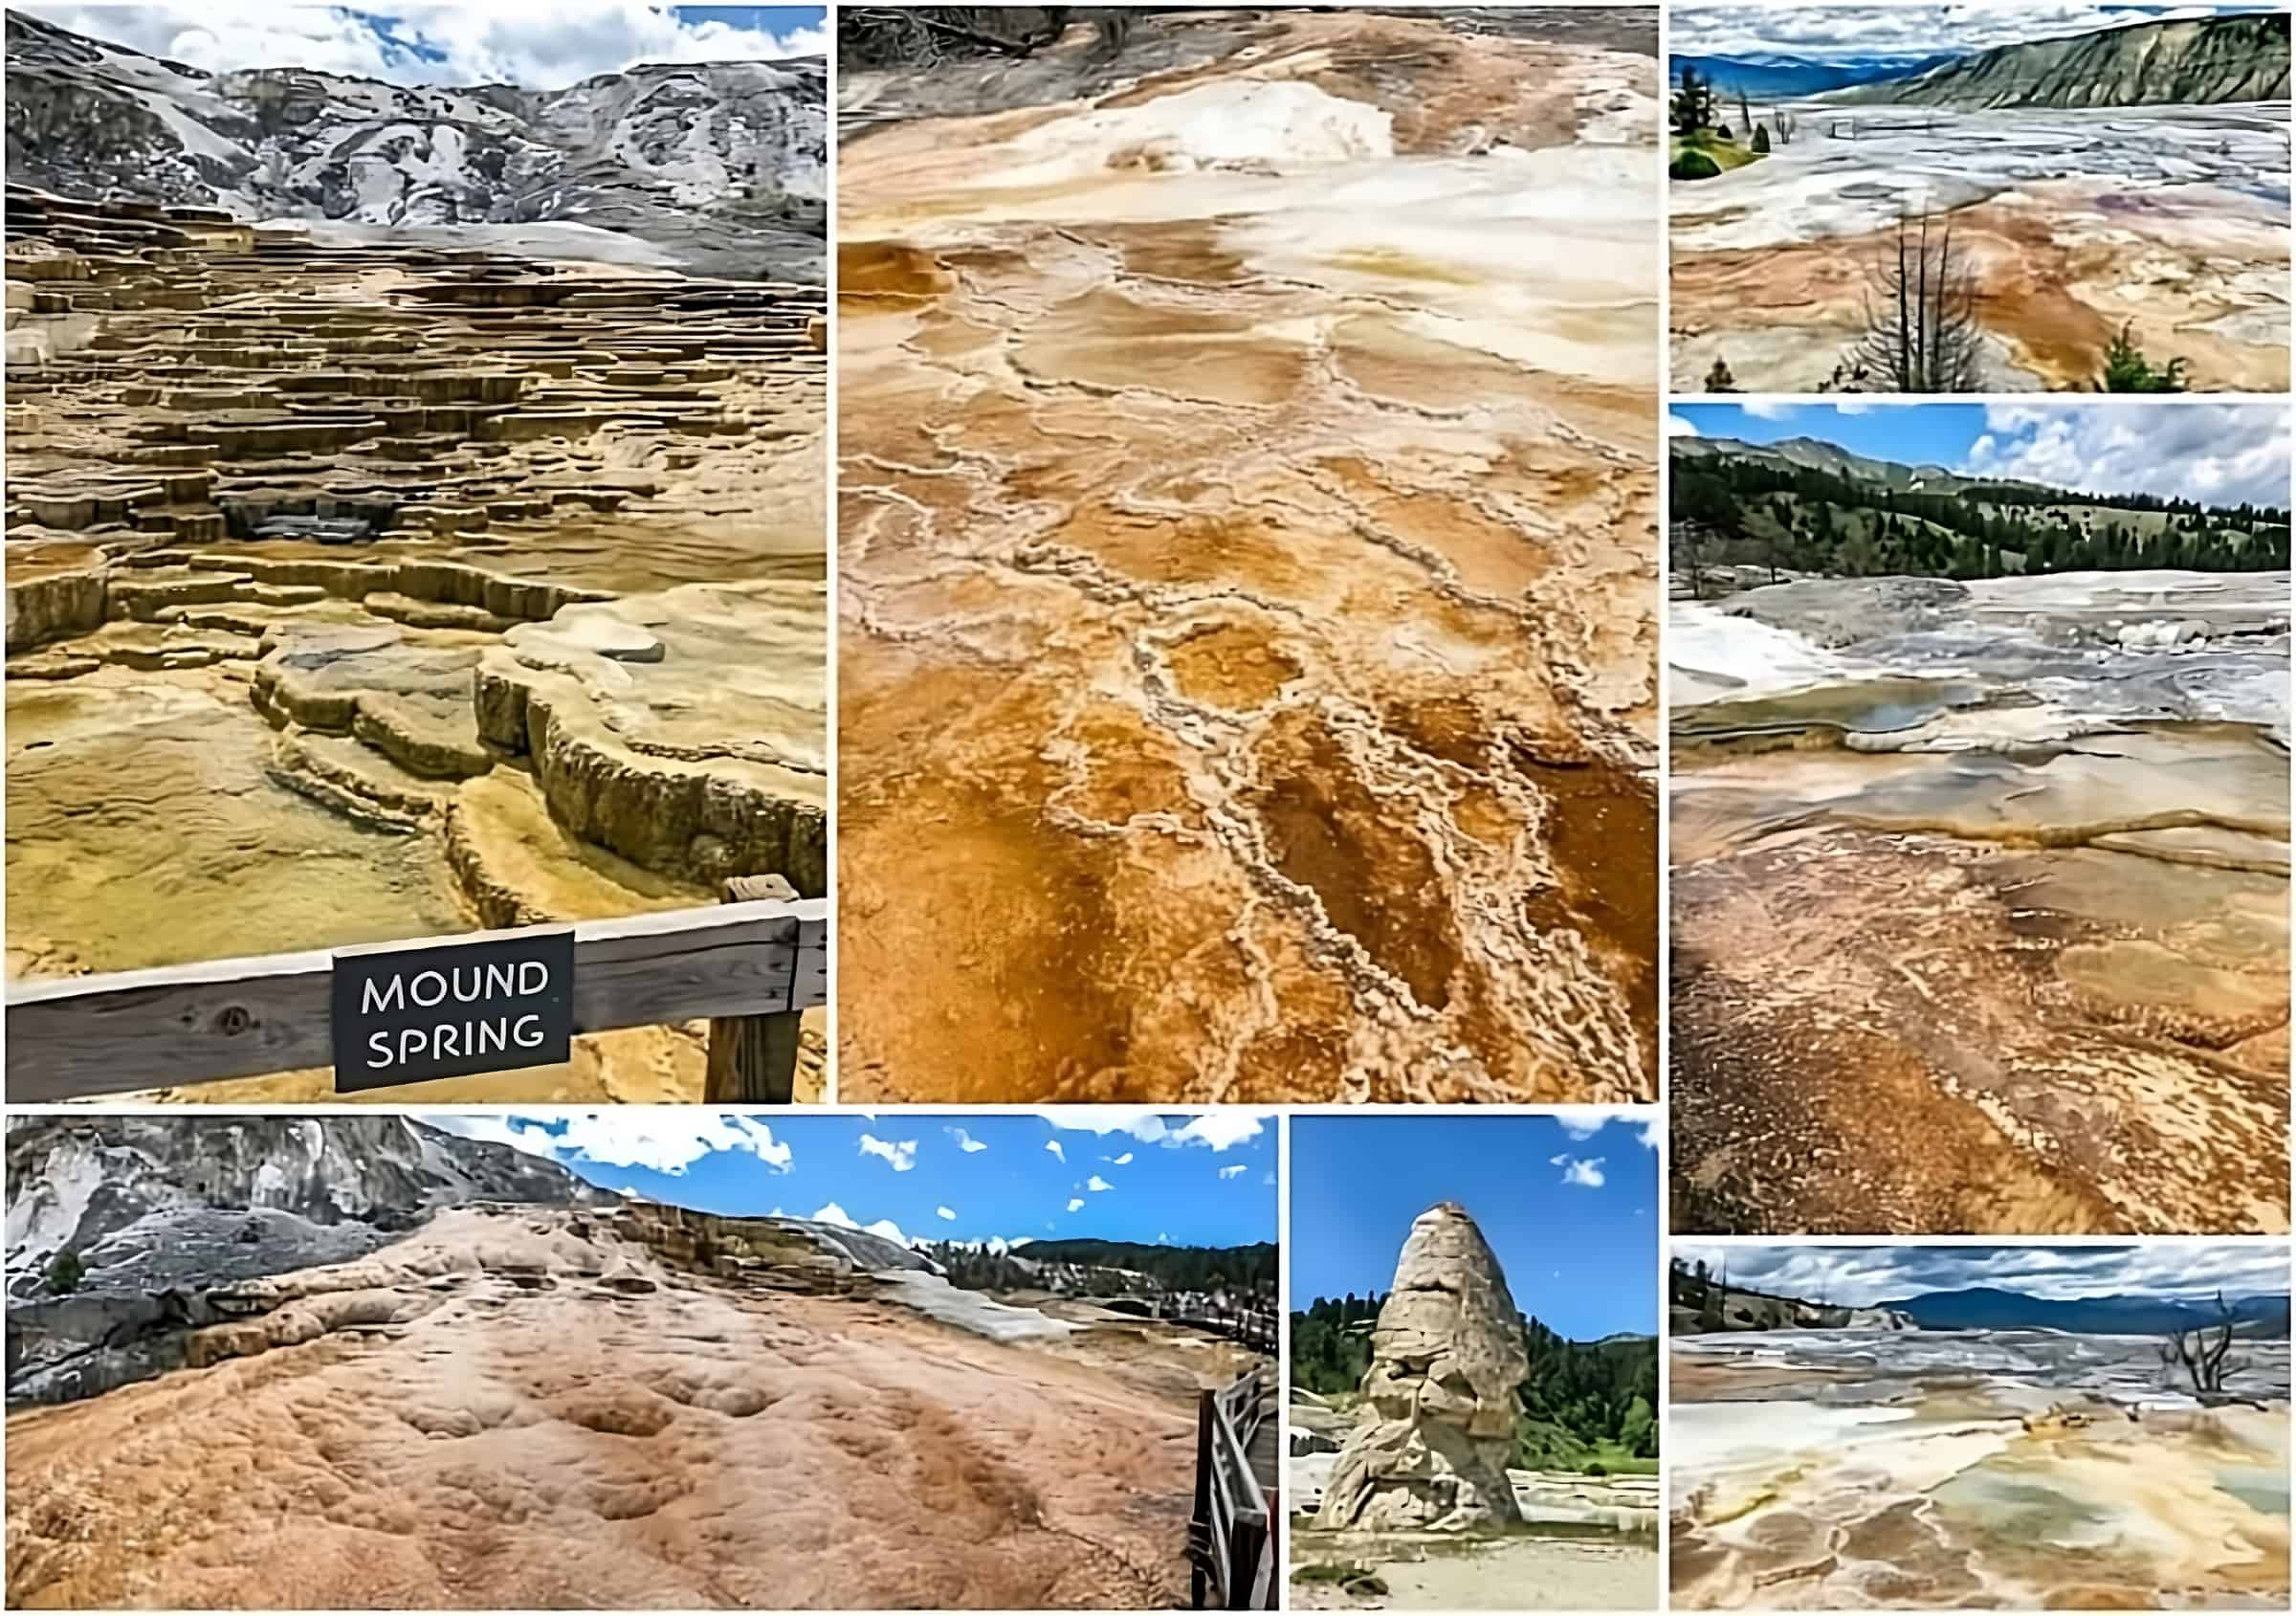 atrakcje Parku Yellowstone to trzeba zobaczyć Mammoth Hot Springs